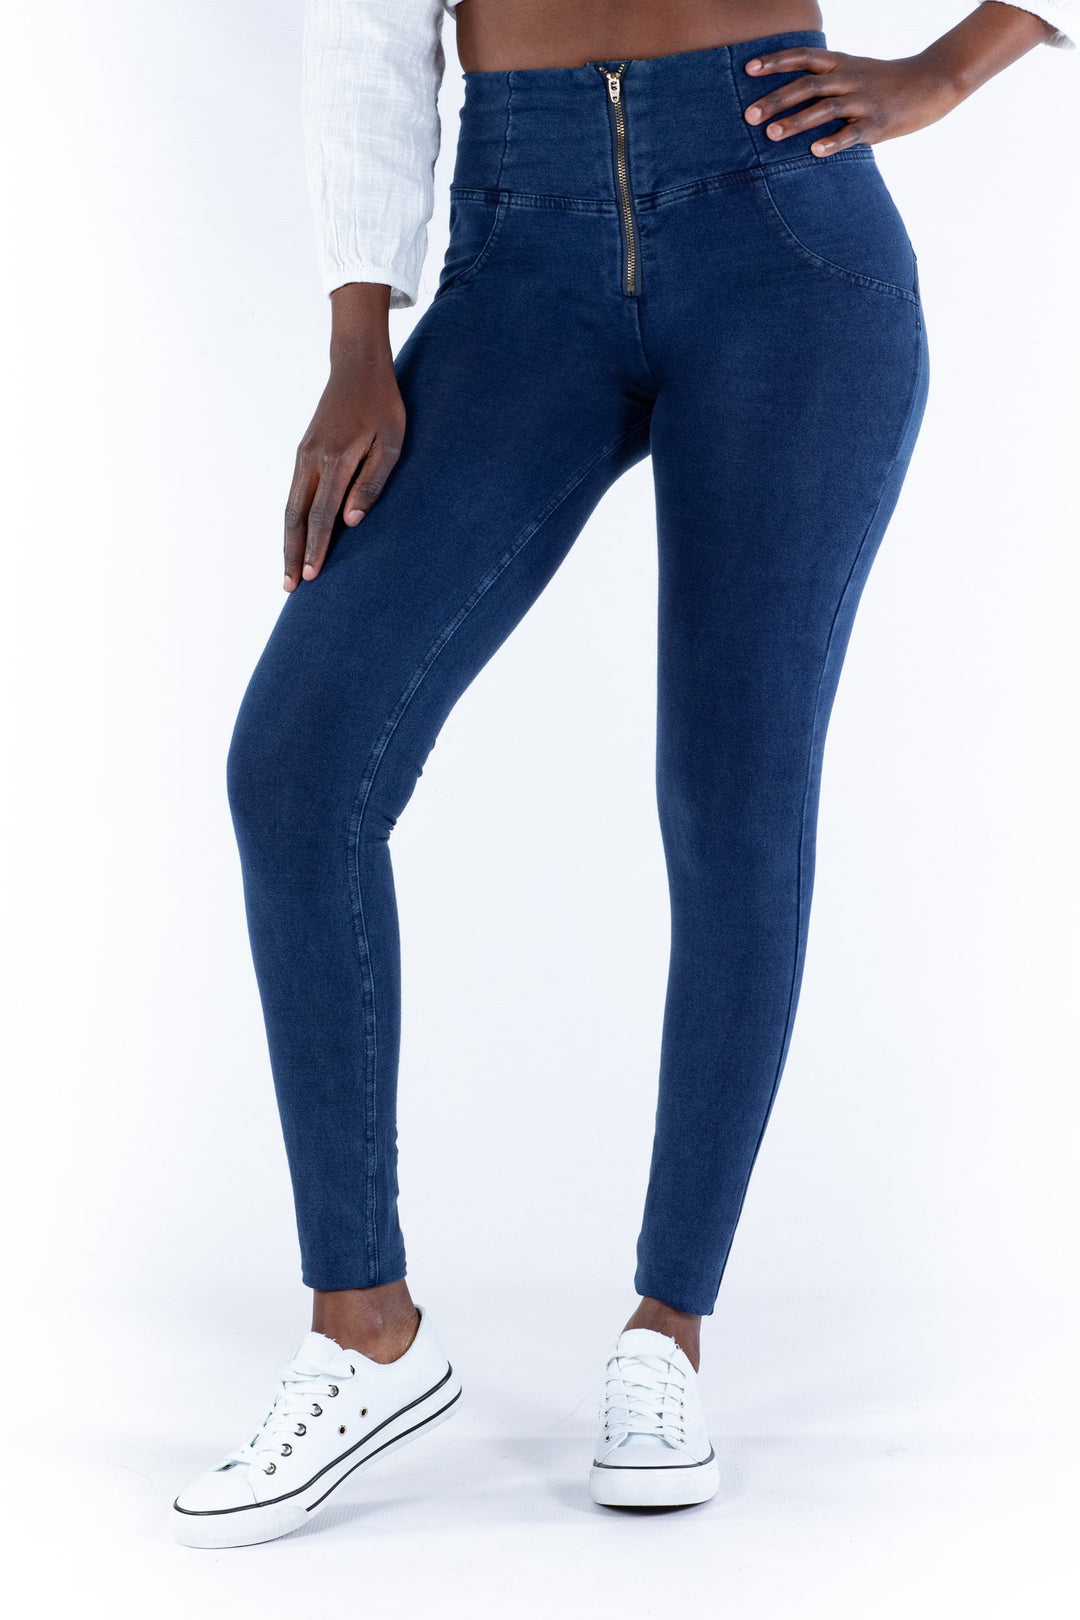 Jaquith Jeans Skinny Butt Lifter High Waist 21273DPAP-N – Ska